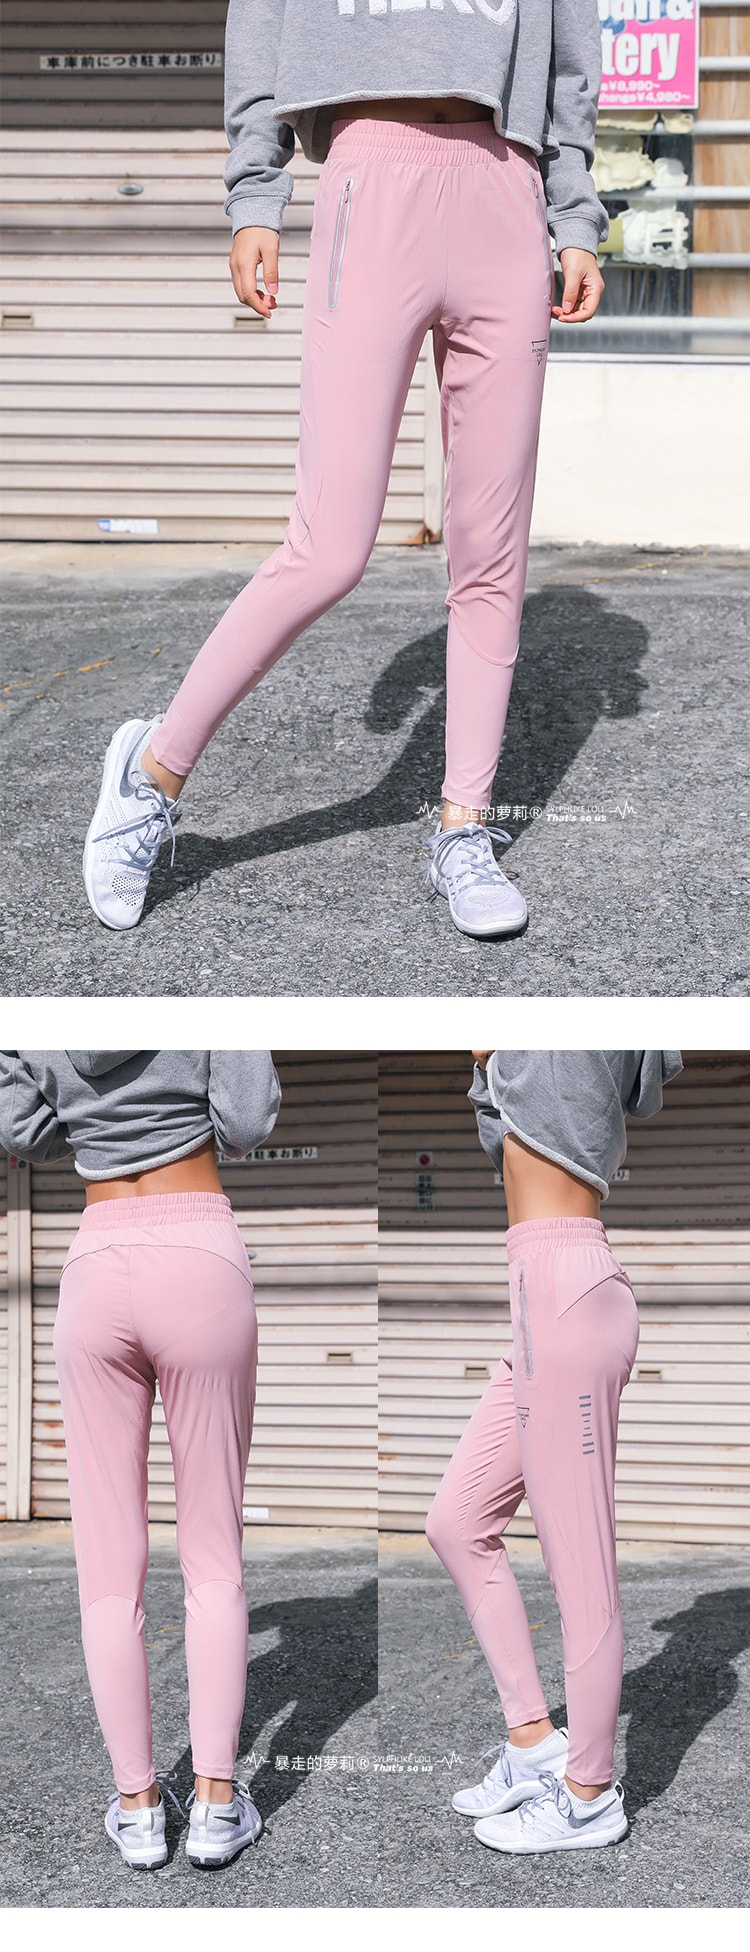 暴走的萝莉 运动休闲长裤含兜女春新款 速干健身训练跑步瑜伽卫裤/忍者黑#/S